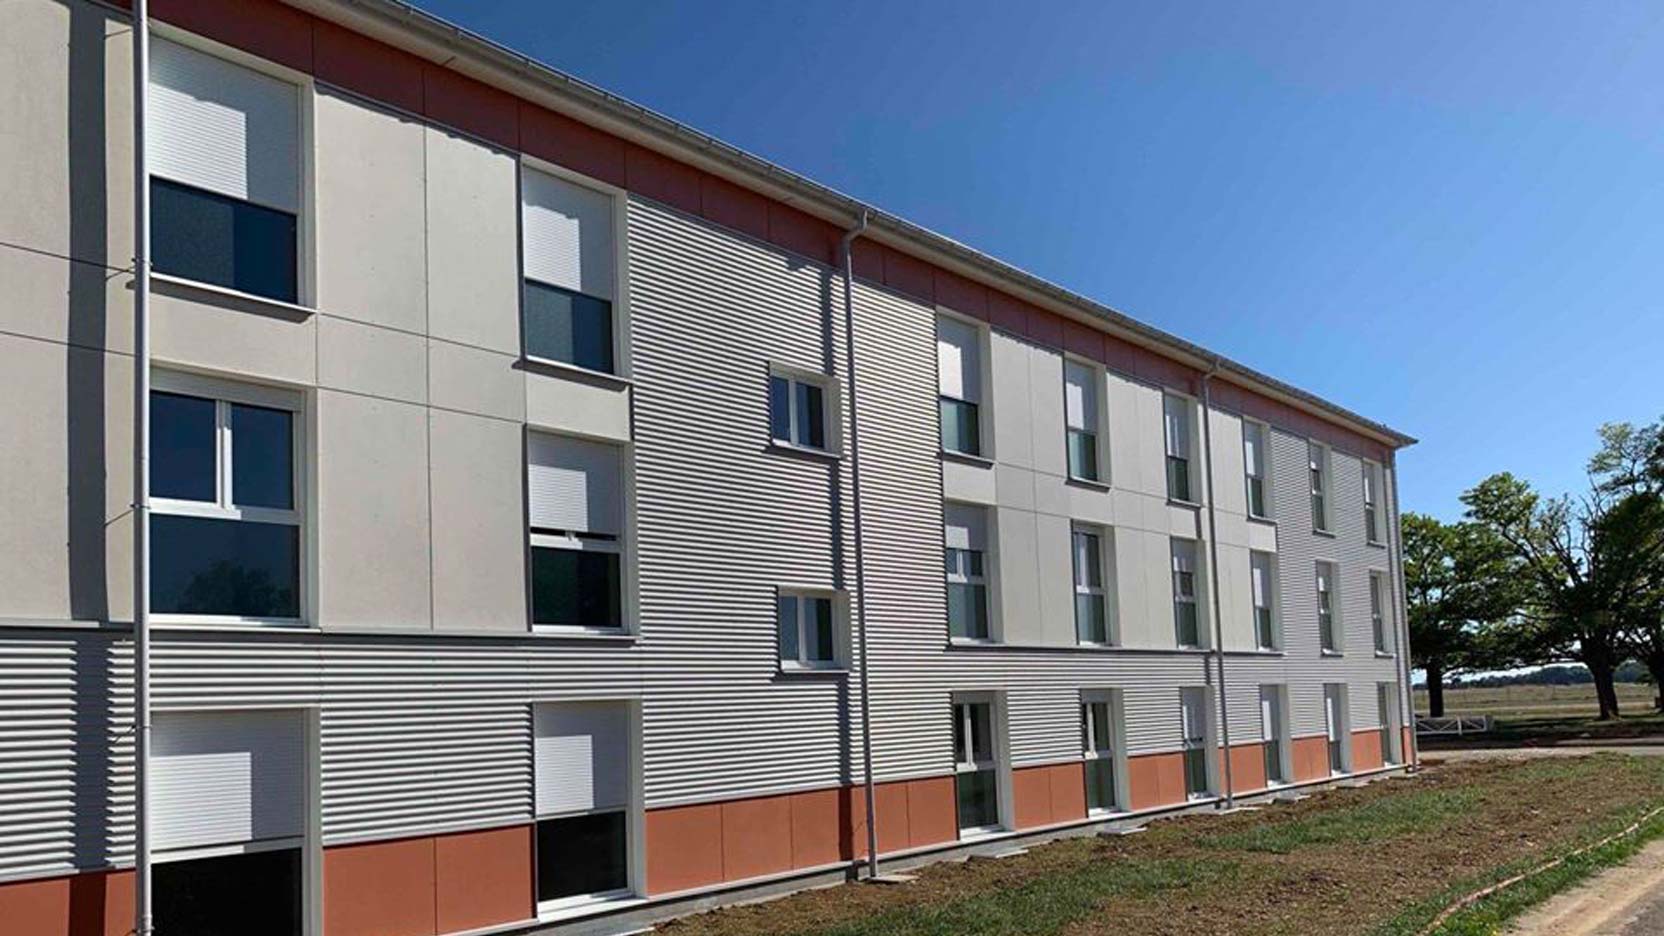 Ossabois a réalisé une extension de l’Ecole de Sous-Officier de Gendarmerie de Dijon-Longvic et 3 bâtiments d’hébergement destinés à accueillir les futurs sous-officiers